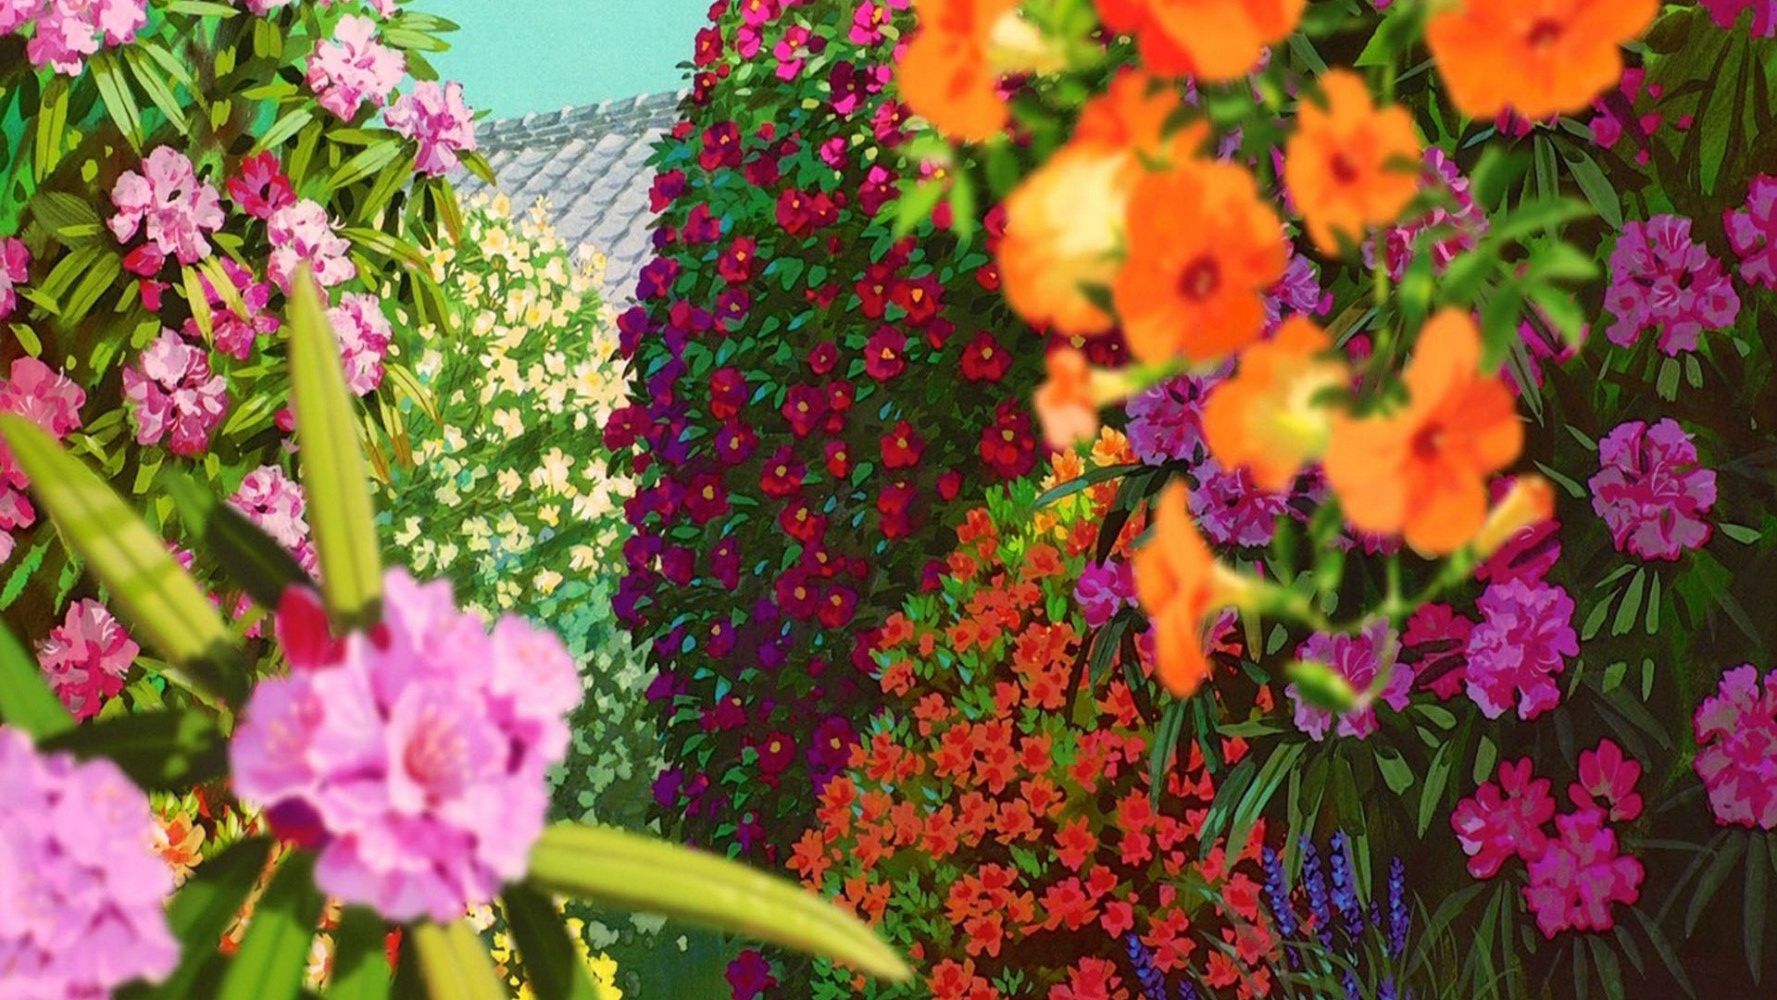 花香满屋的二次元花朵花卉场景动漫壁纸美图，宫崎骏场景壁纸图片